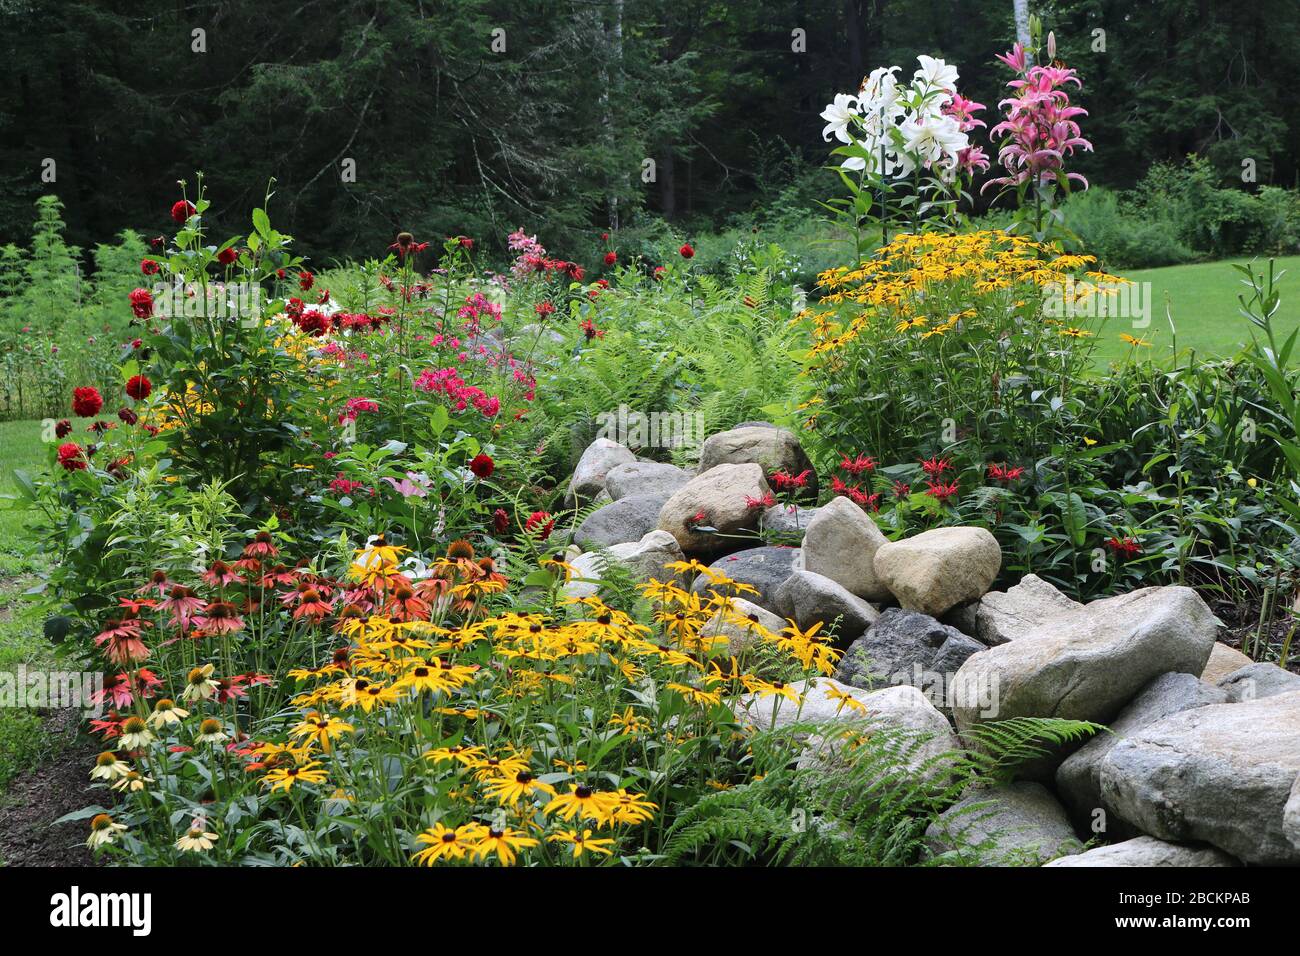 Farbenfroher Blumengarten mit Steinwand, darunter Rudbeckia, Flox, Lilien und Dahlien. Stockfoto